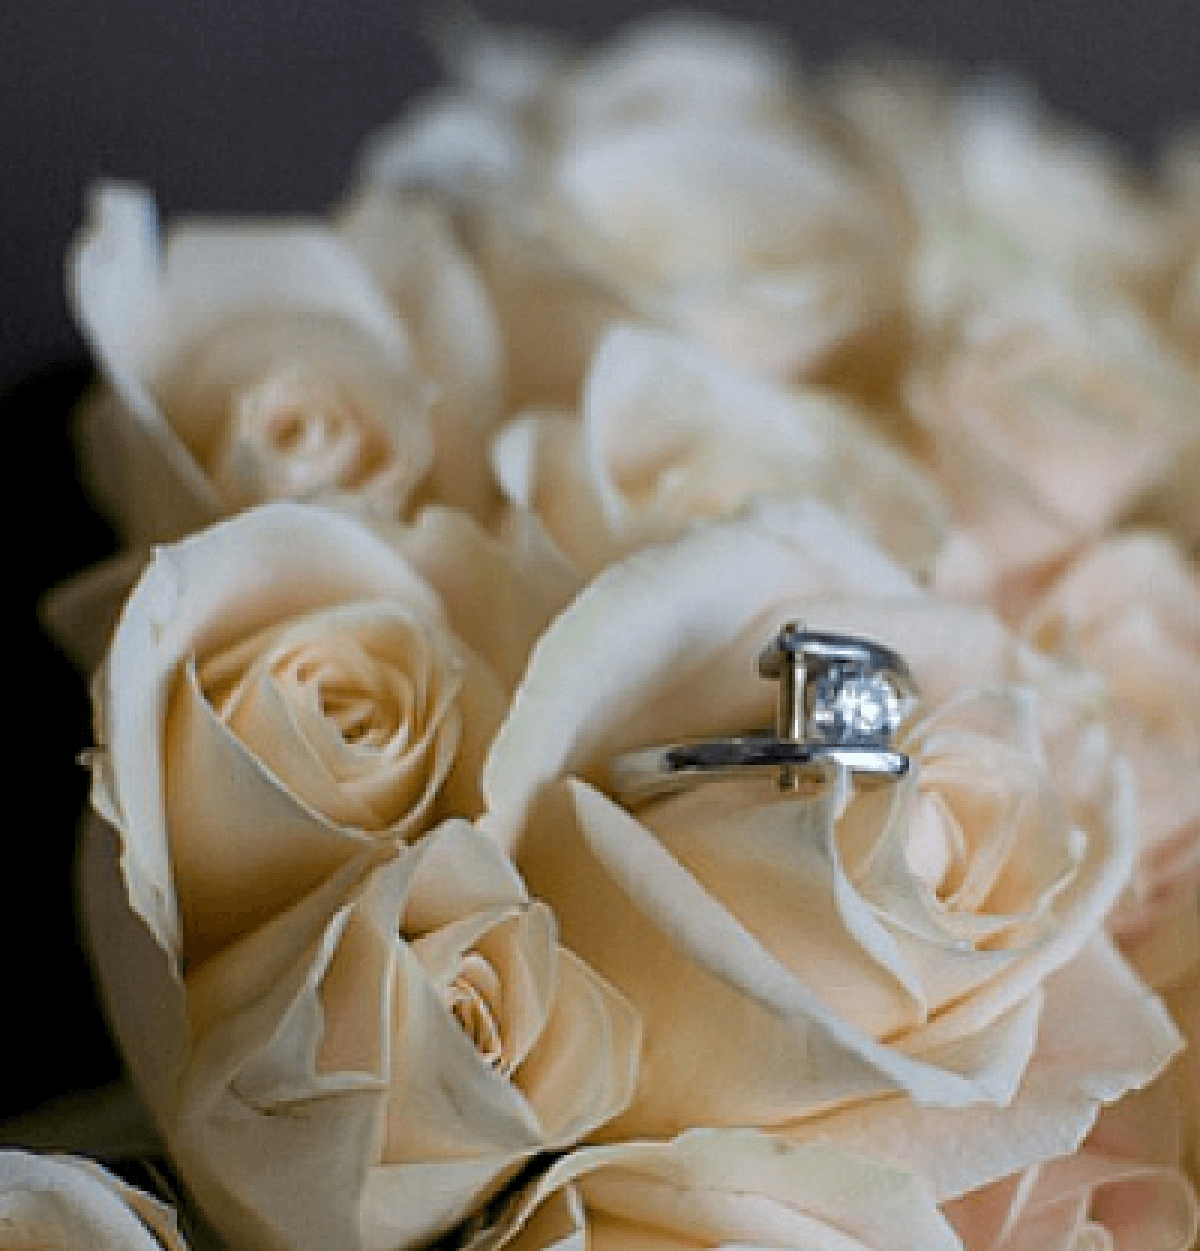 Букет цветов с кольцом